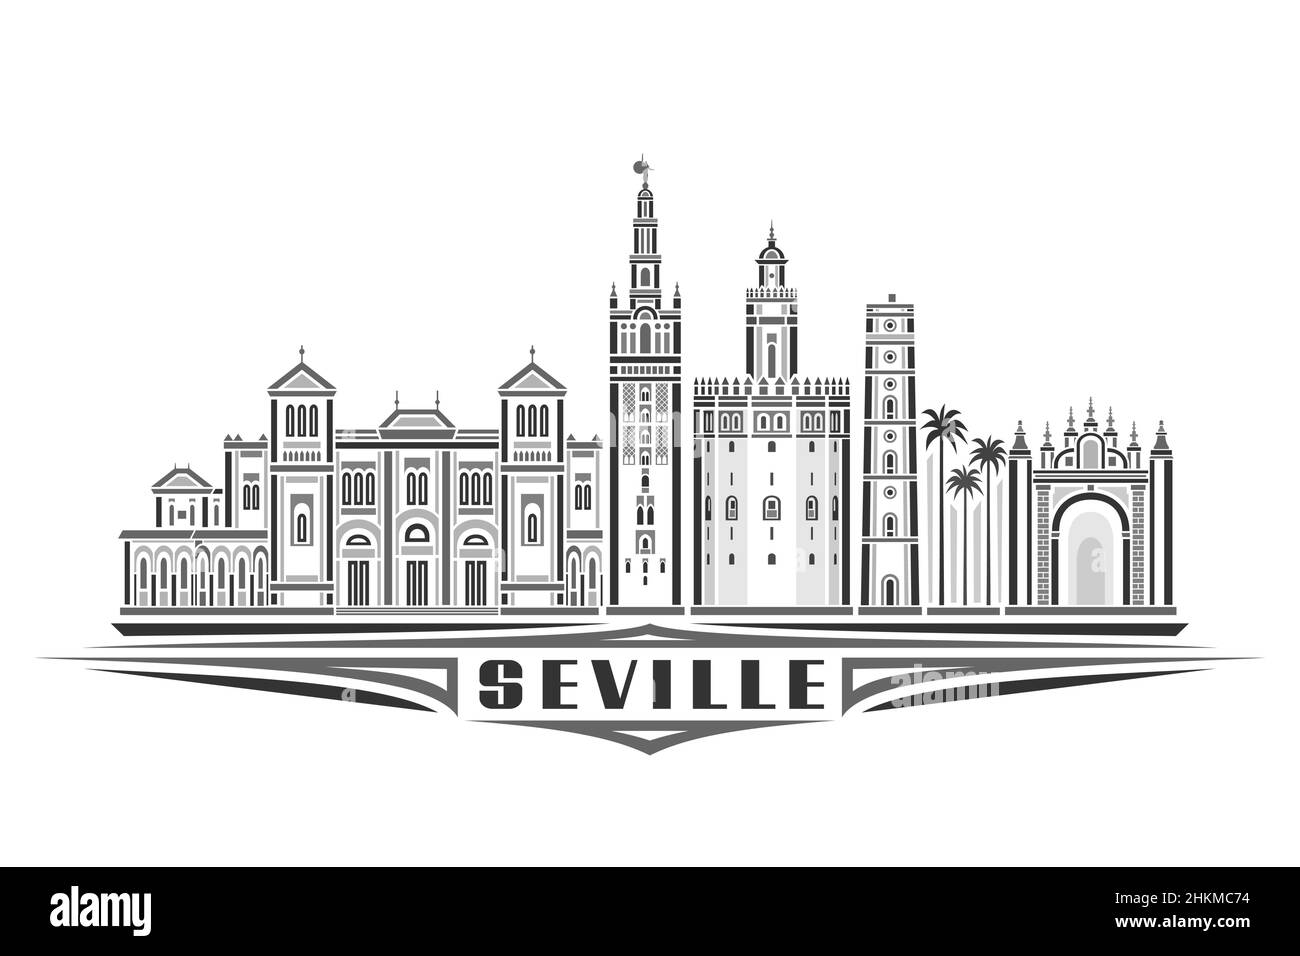 Illustrazione vettoriale di Siviglia, poster orizzontale monocromatico con design lineare famoso paesaggio cittadino di siviglia, concetto di arte urbana con lett decorativo Illustrazione Vettoriale